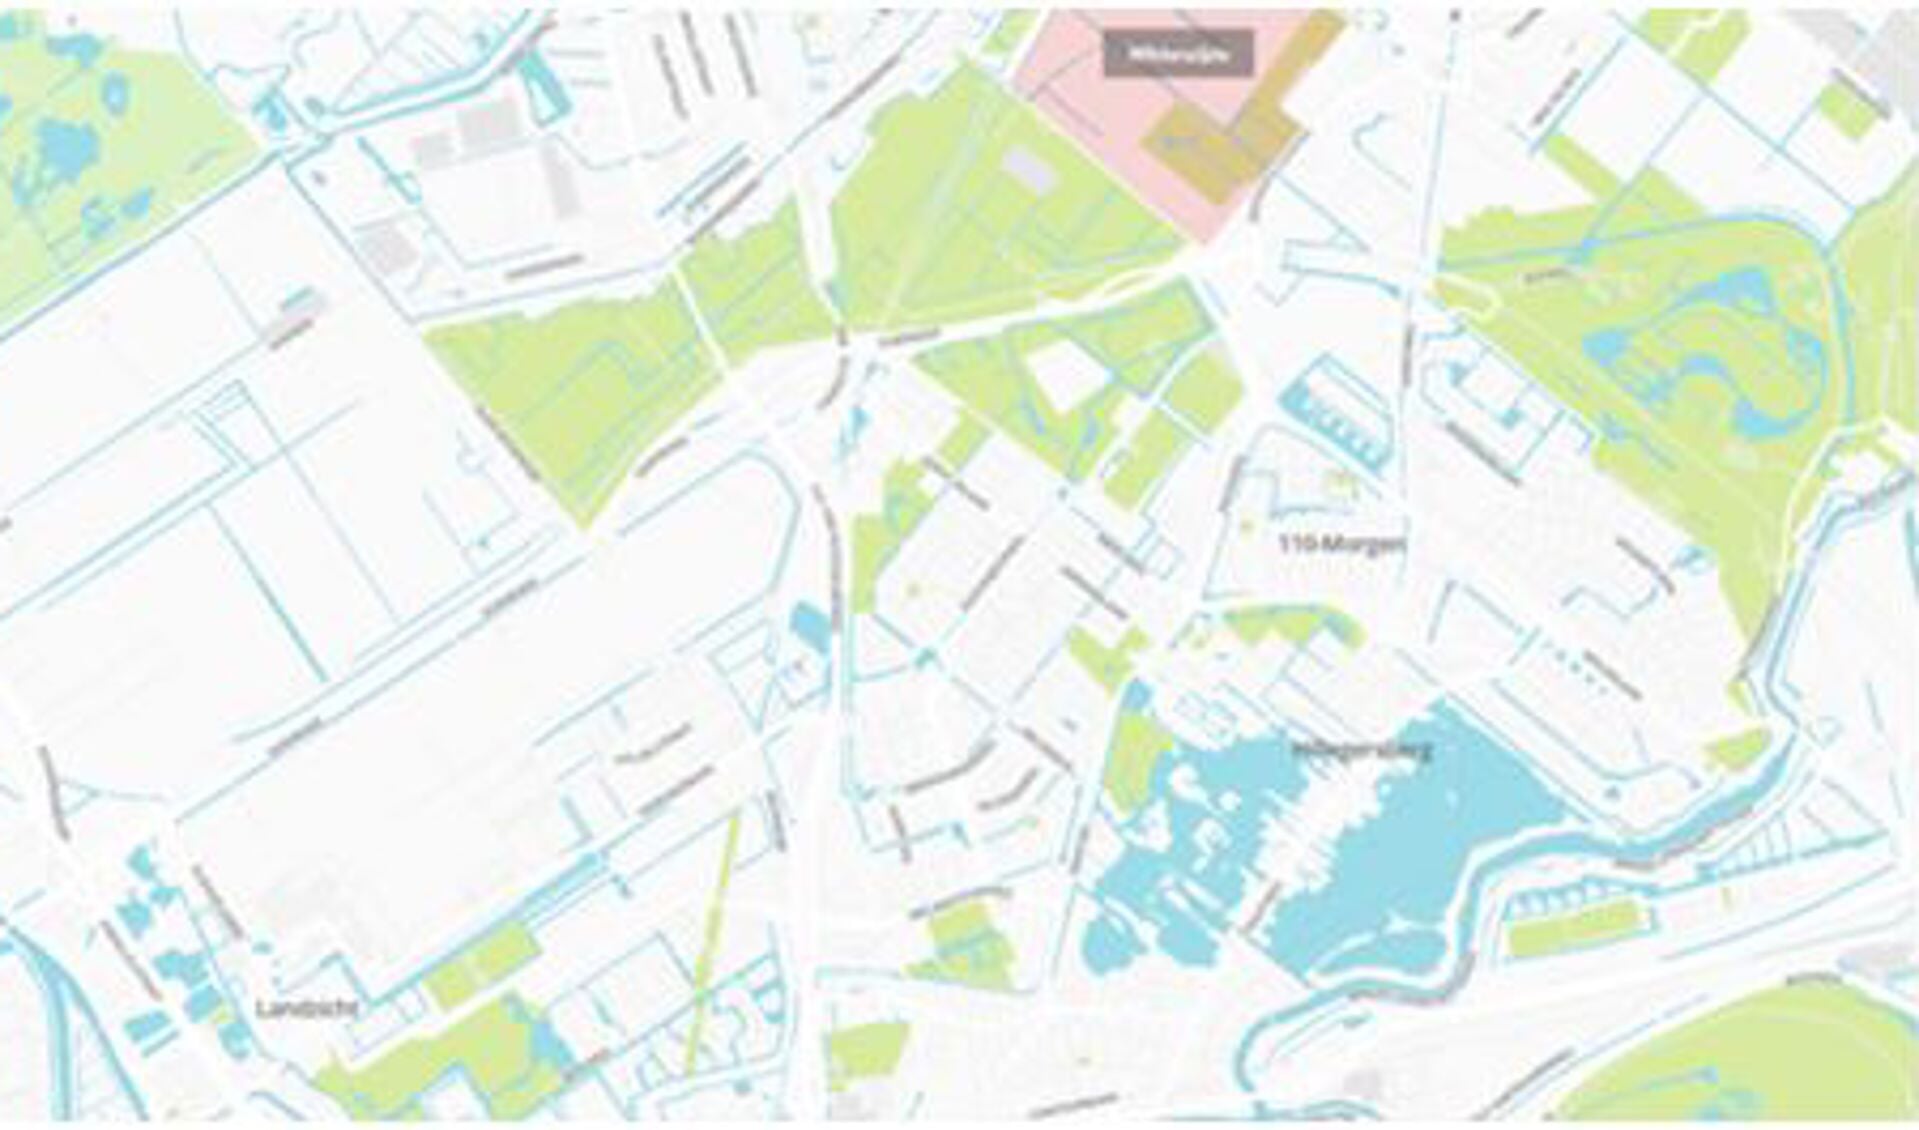 De plattegrond toont wel het aanwezige groen in de omgeving, maar ten zuiden van de Doenkade bevindt zich een grote witte plek waar het vliegveld met de landingsbaan ligt.